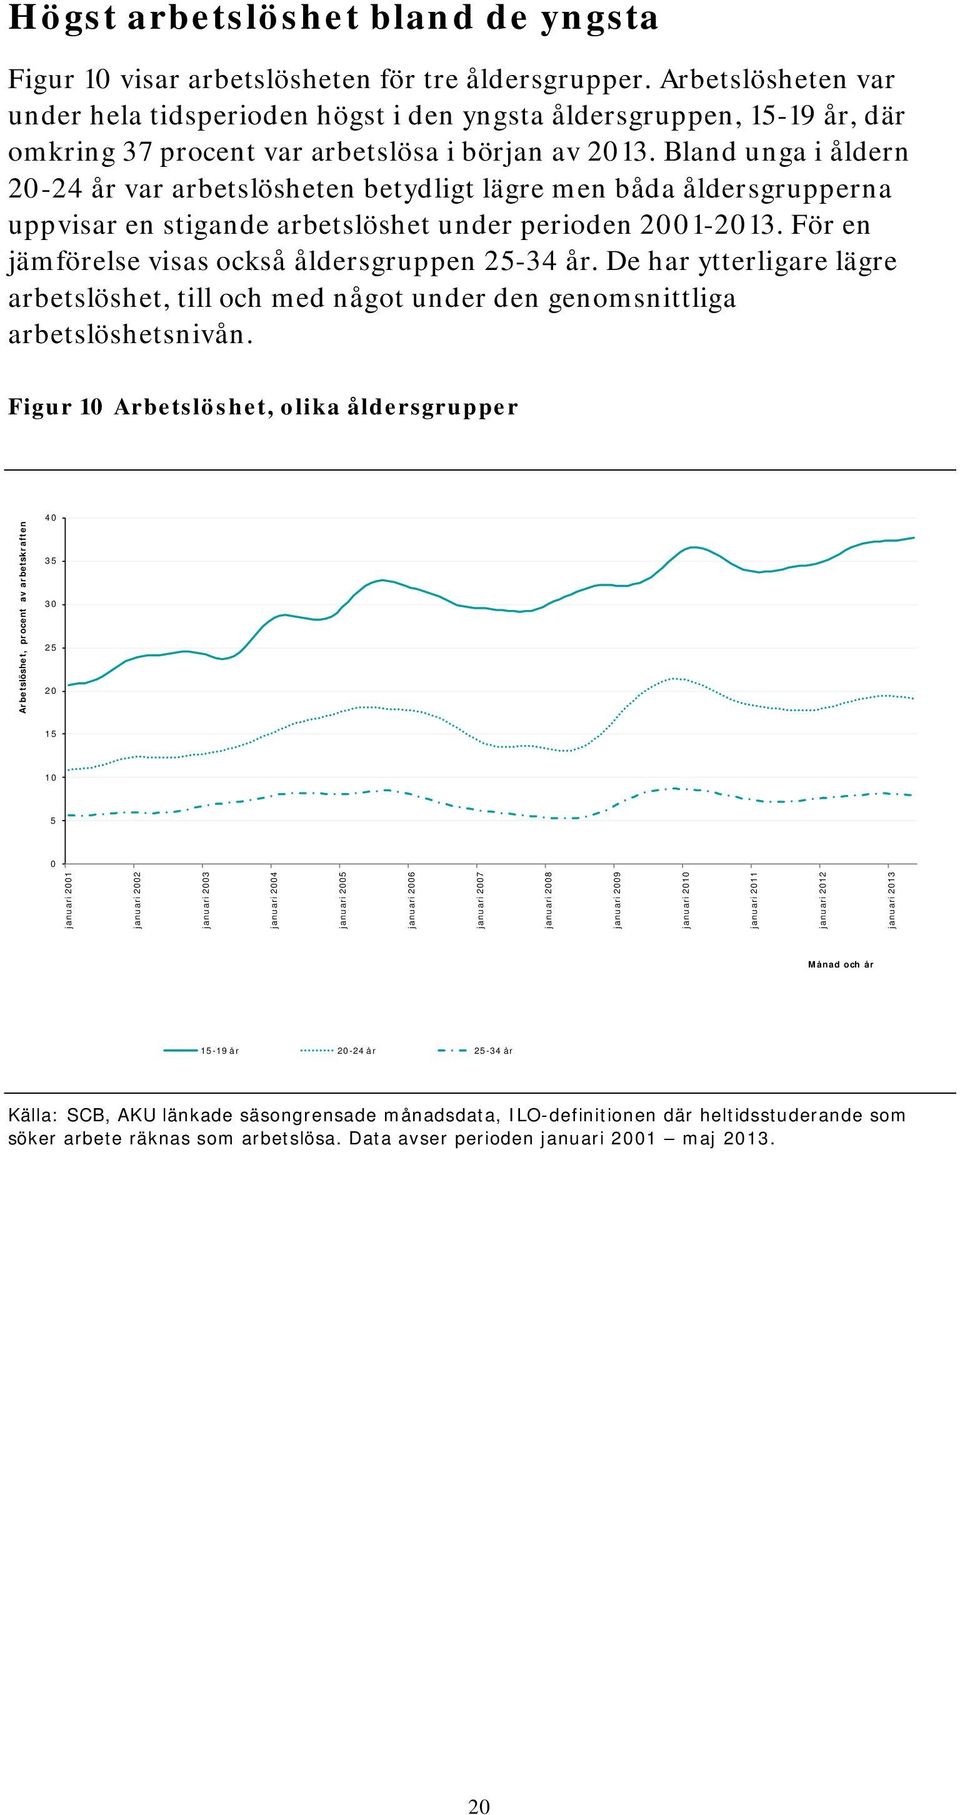 Bland unga i åldern 20-24 år var arbetslösheten betydligt lägre men båda åldersgrupperna uppvisar en stigande arbetslöshet under perioden 2001-2013.